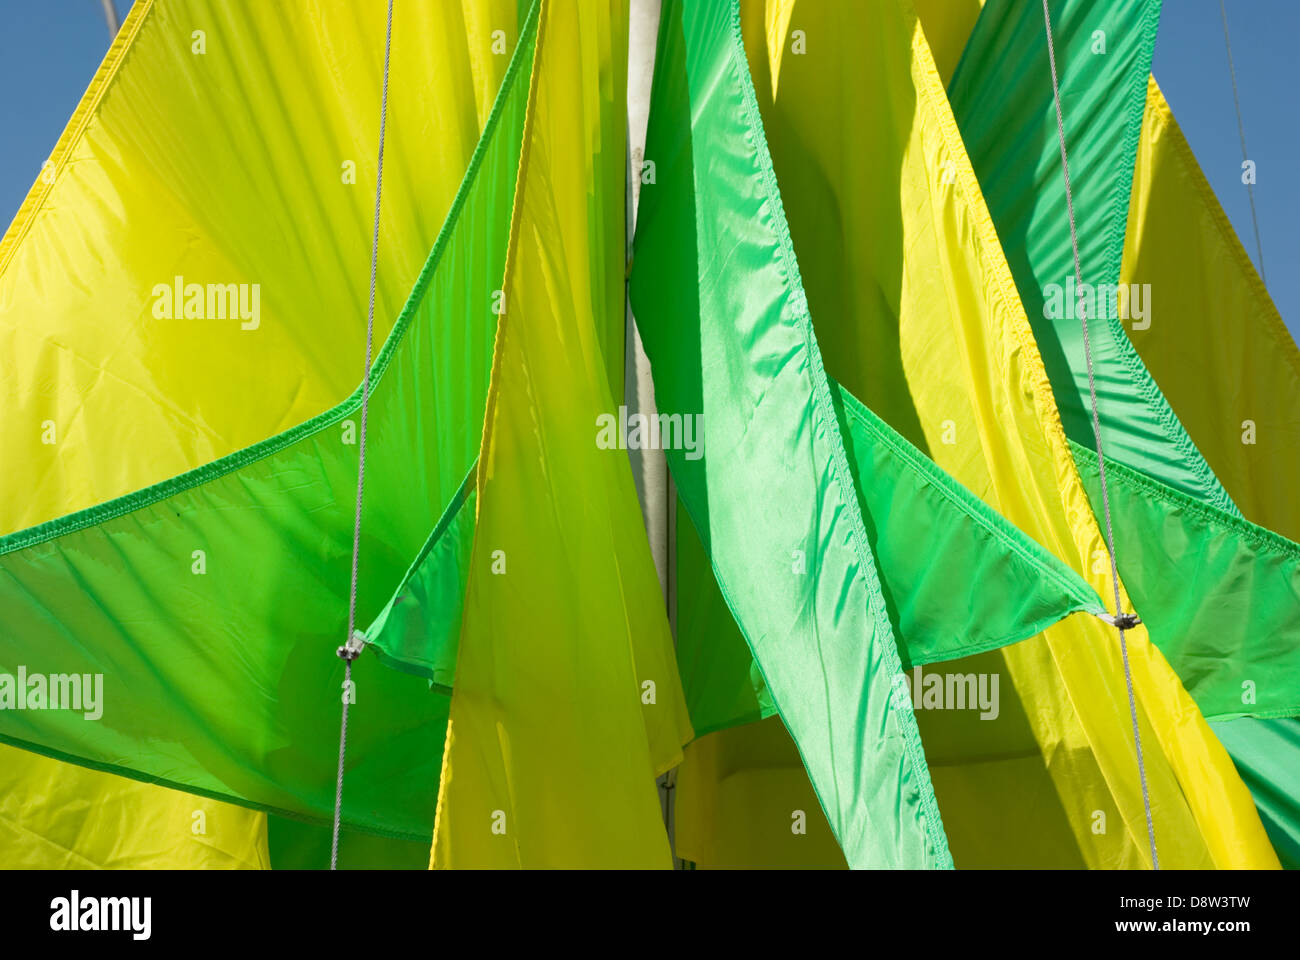 Drapeaux jaune vert géométrique Banque D'Images